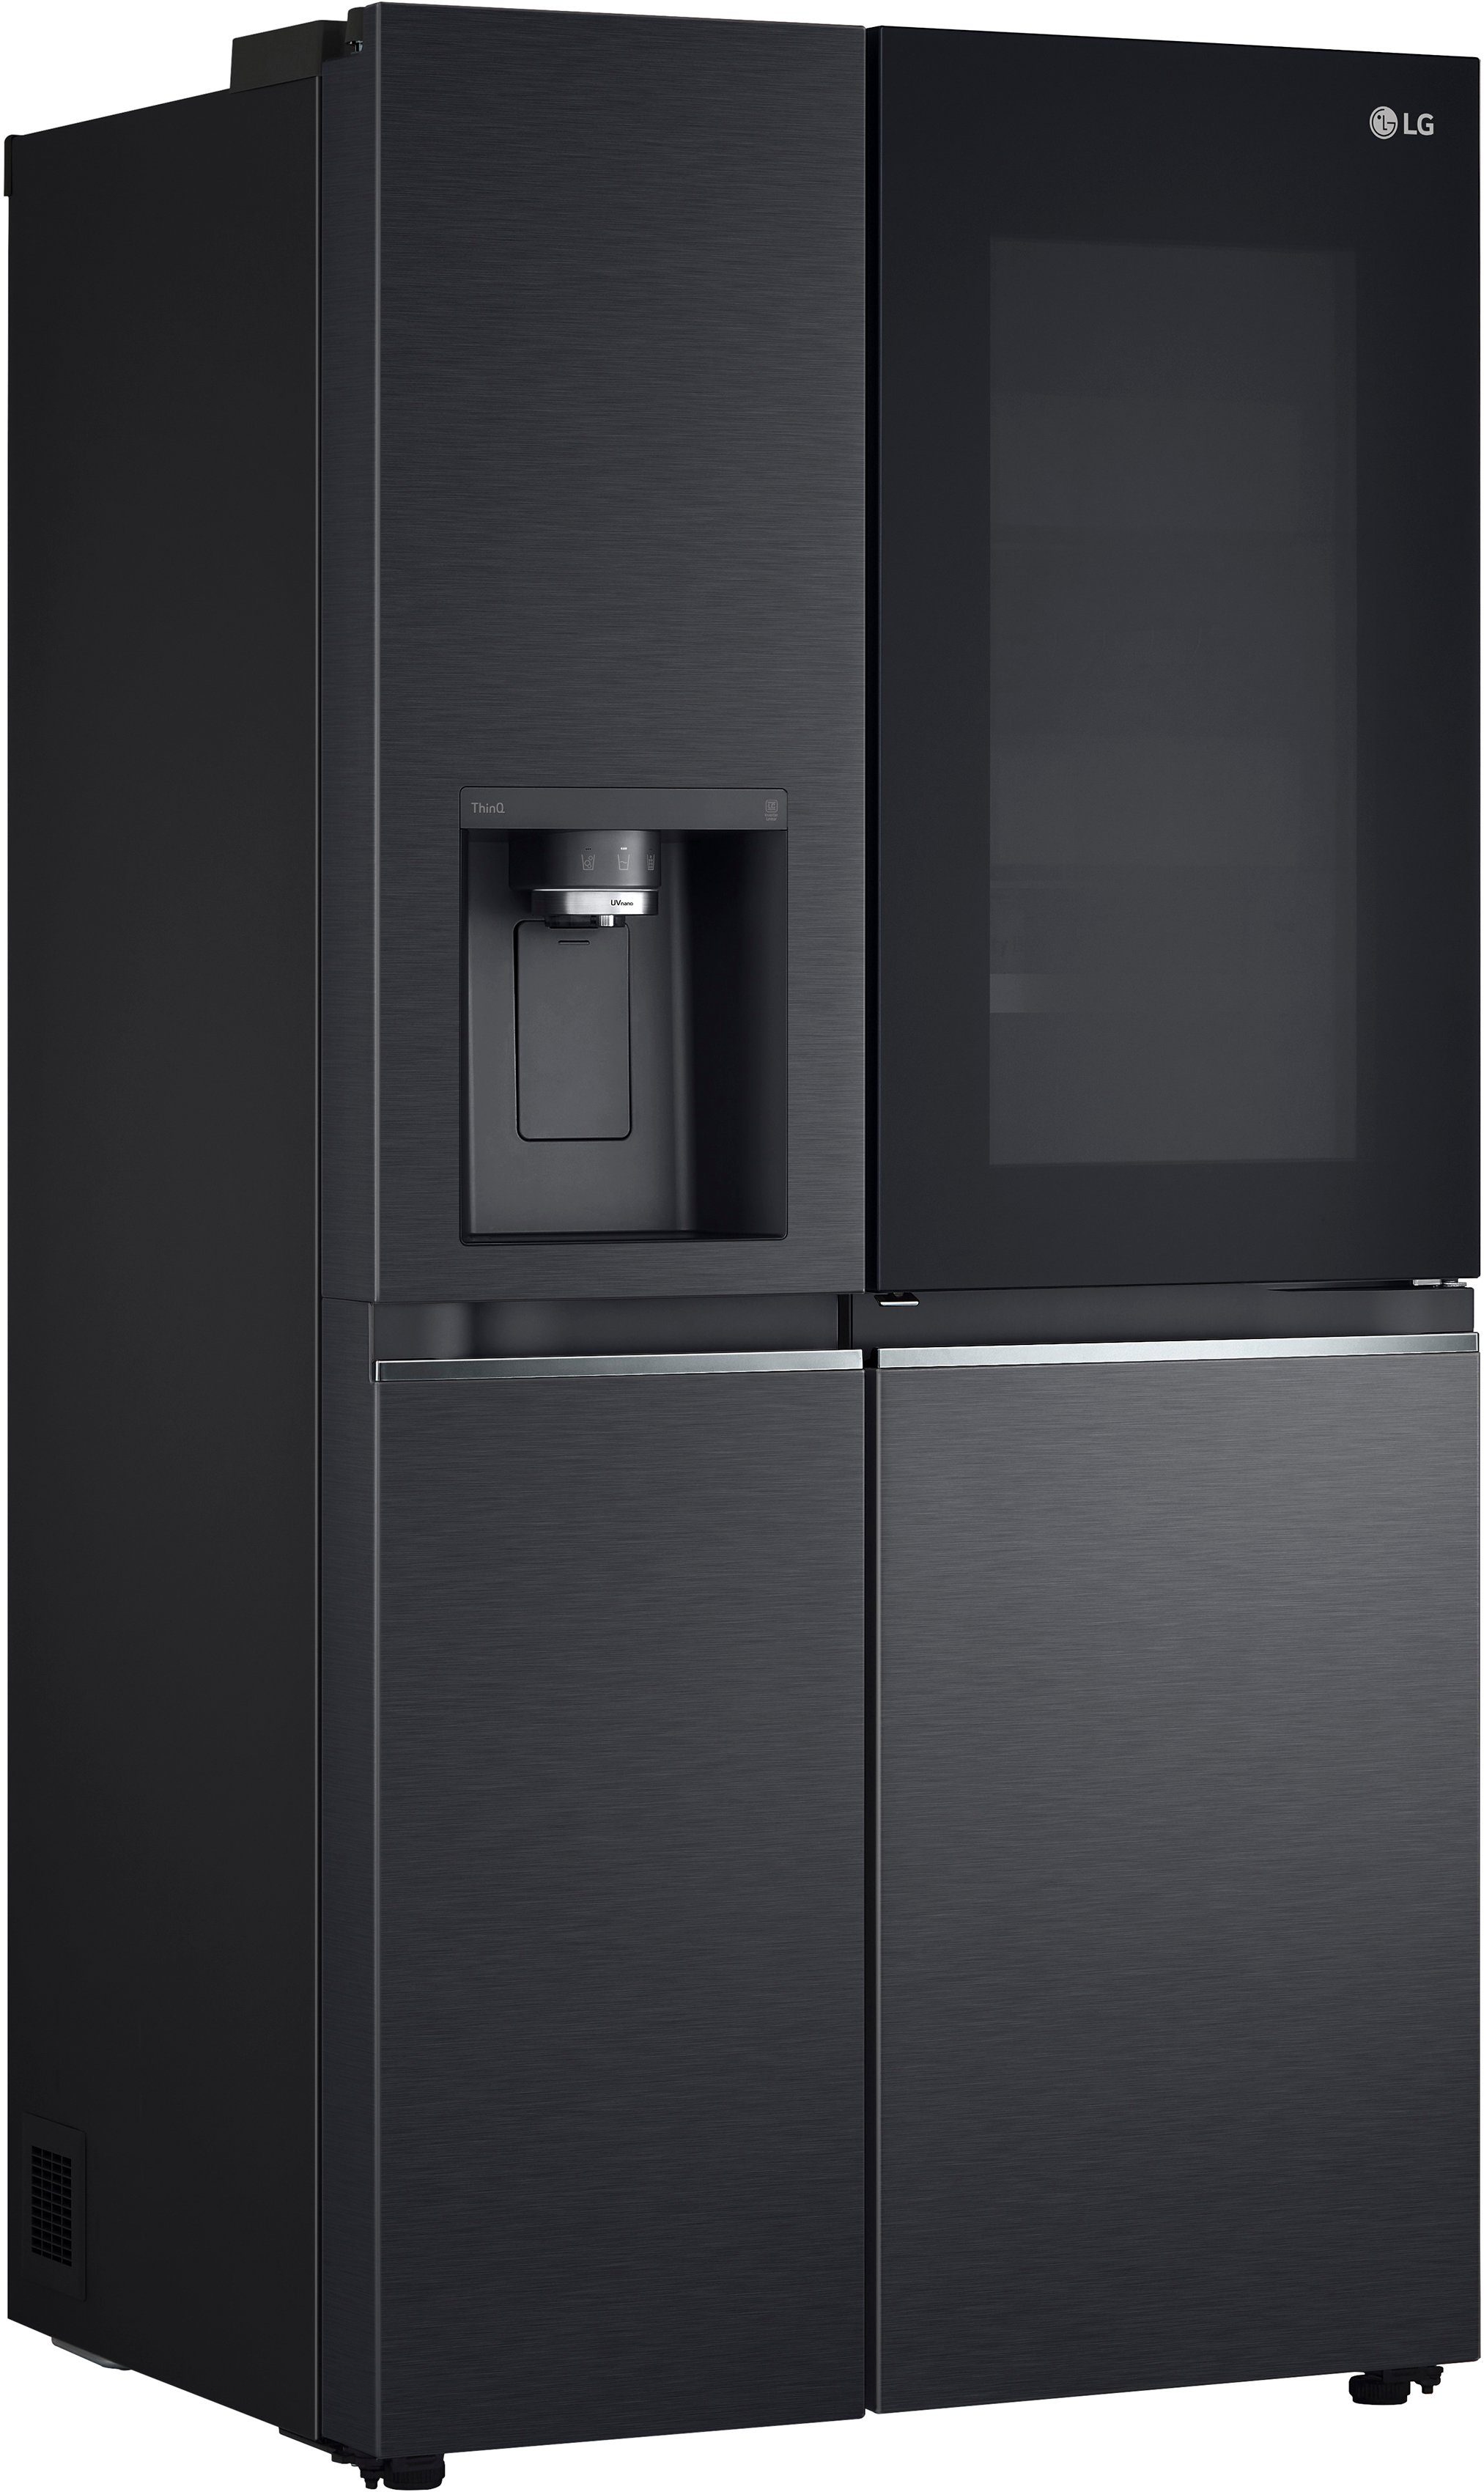 LG Side-by-Side GSXV90MCDE, 179 cm hoch, 91,3 cm breit, Craft Ice Bereiter, InstaView™ mattschwarz | Side-by-Side Kühlschränke